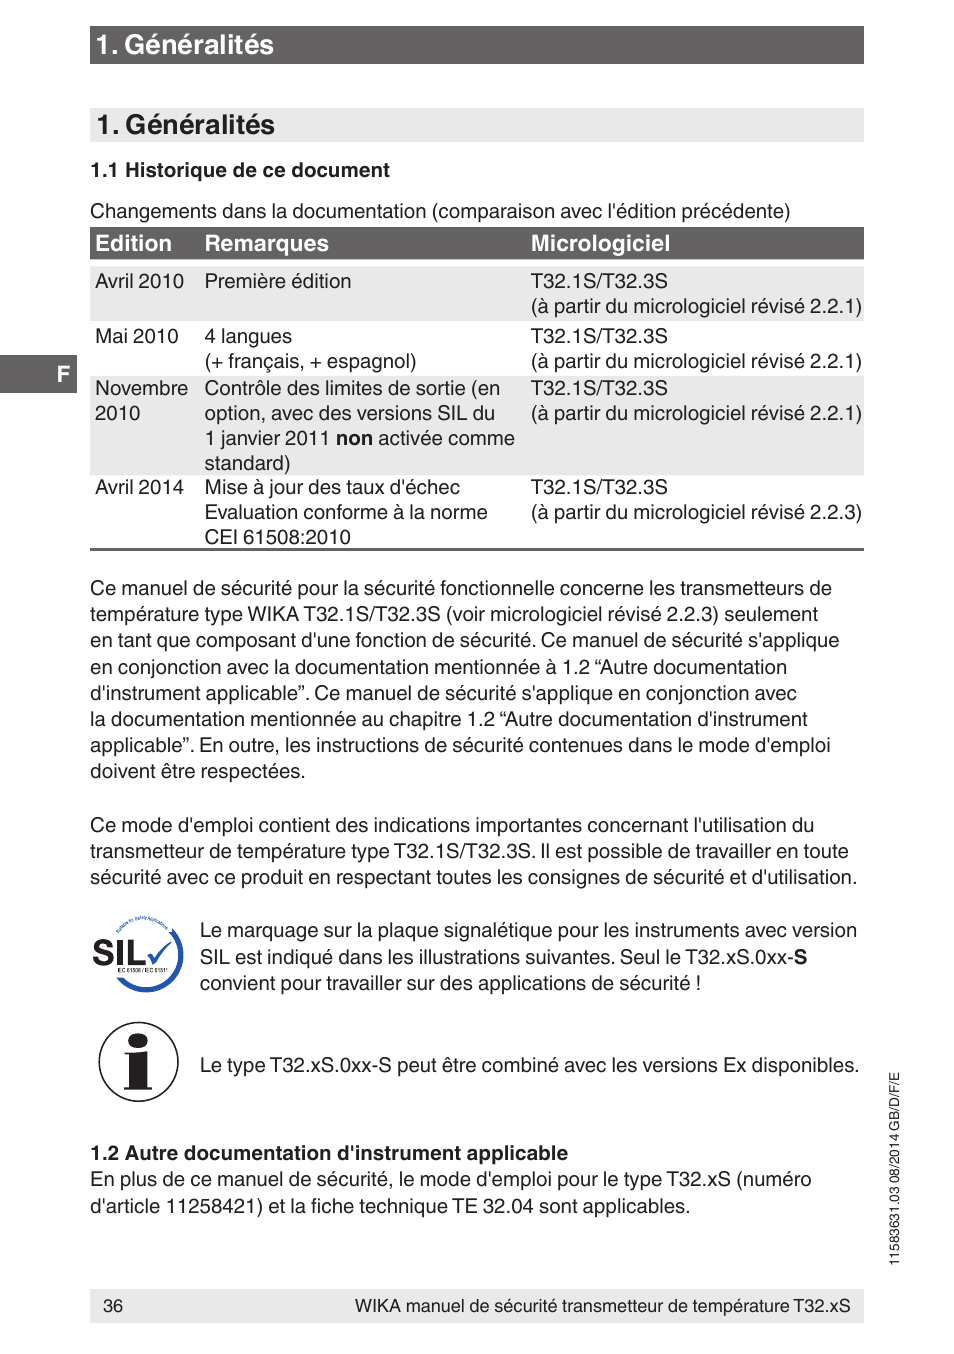 Généralités | WIKA T32.xS User Manual | Page 36 / 64 | Original mode